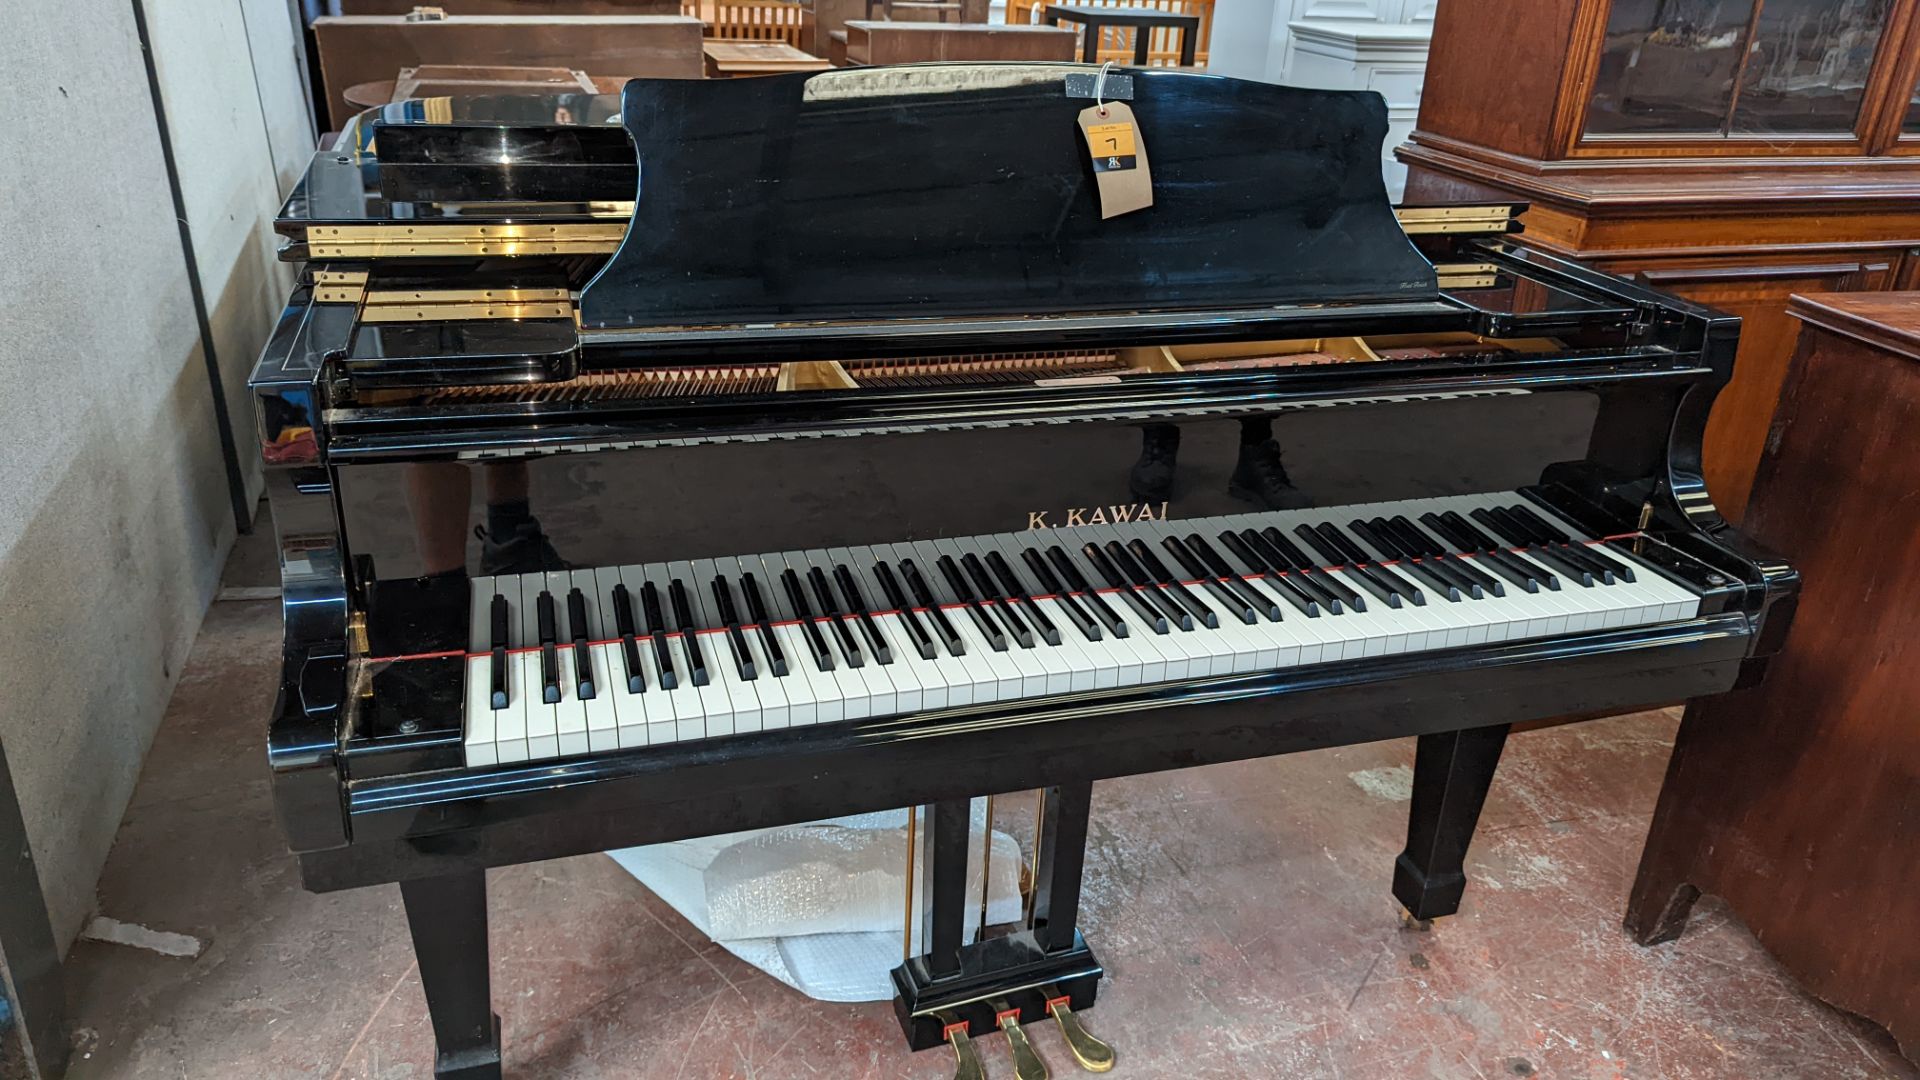 K. Kawai RX-2 grand piano - Image 4 of 16